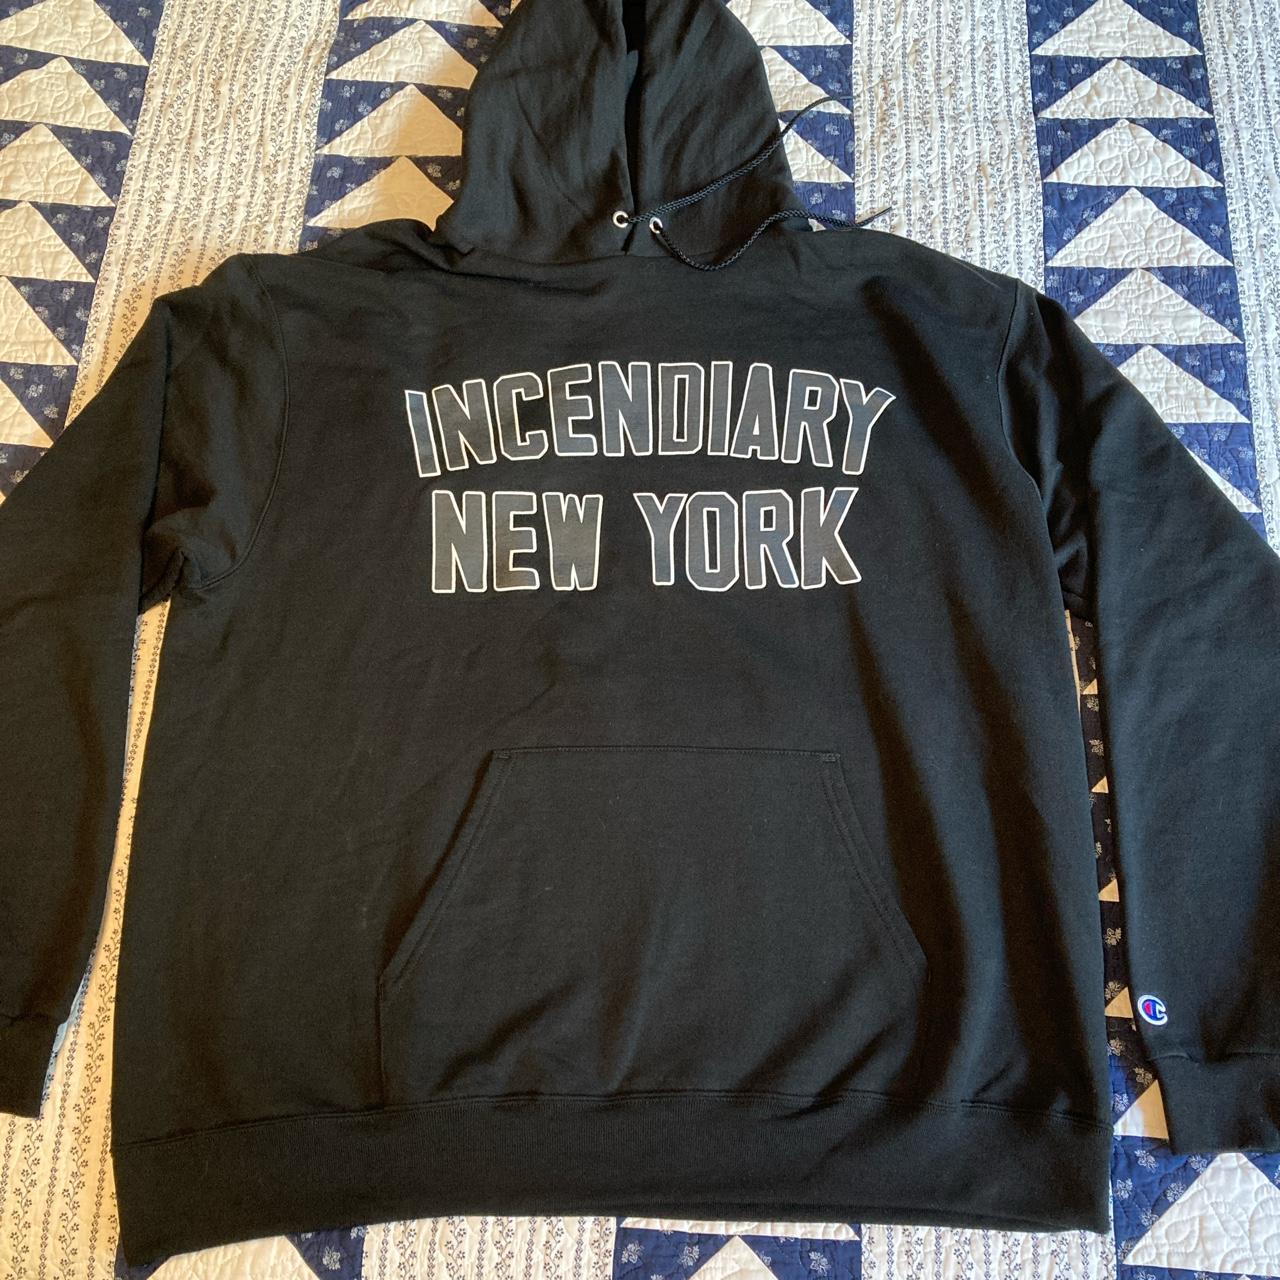 Incendiary New York xl black hoodie printed on... - Depop